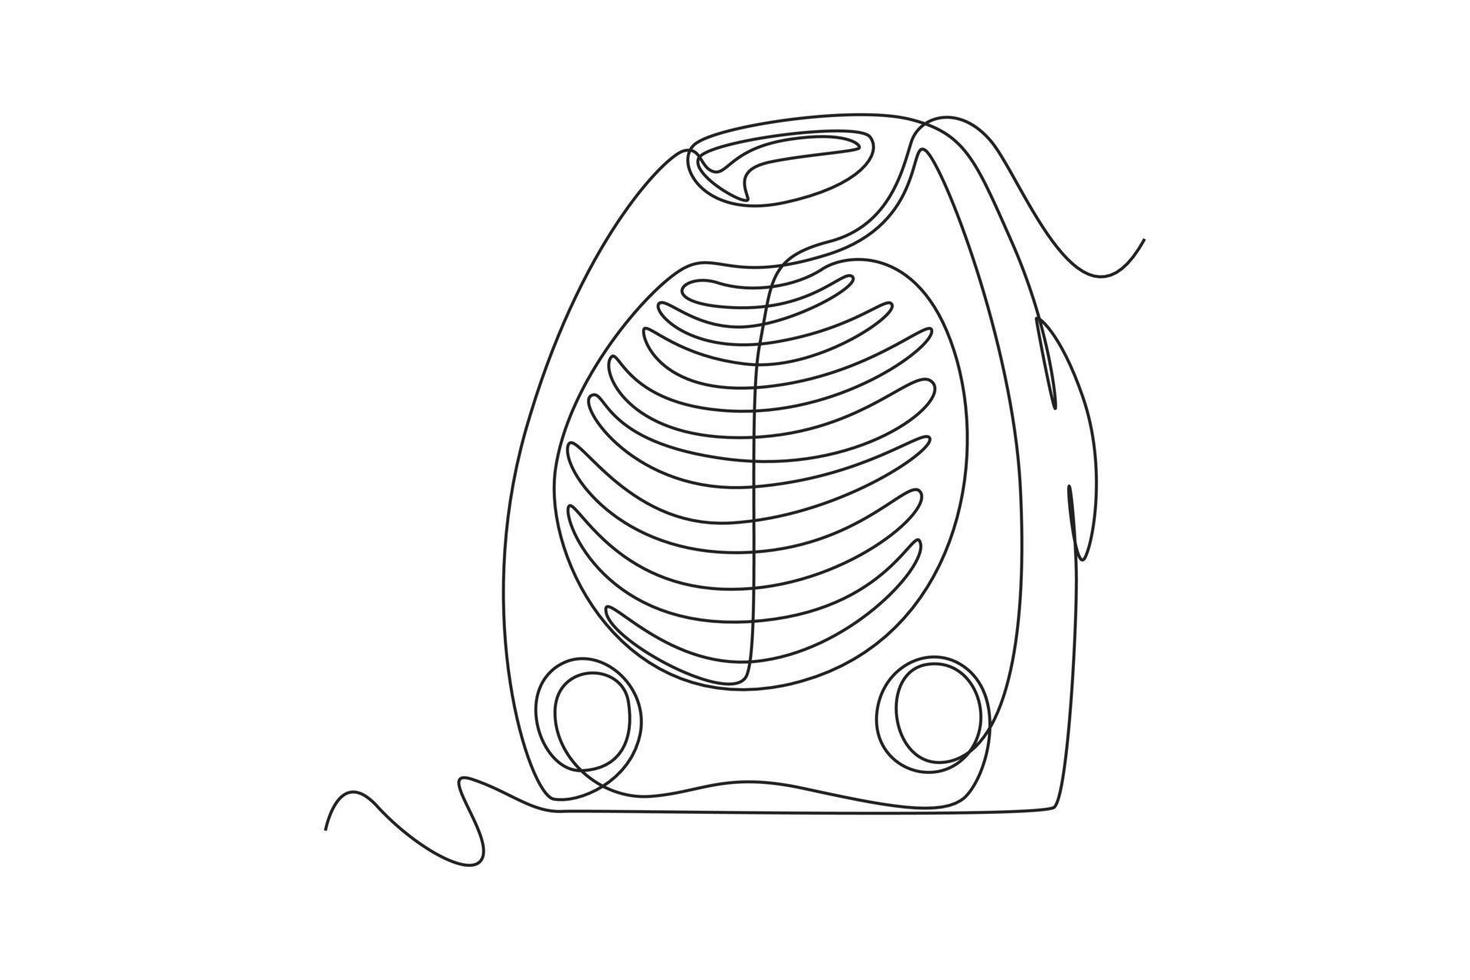 solteiro 1 linha desenhando moderno elétrico fã. eletricidade casa utensílio conceito. contínuo linha desenhar Projeto gráfico vetor ilustração.